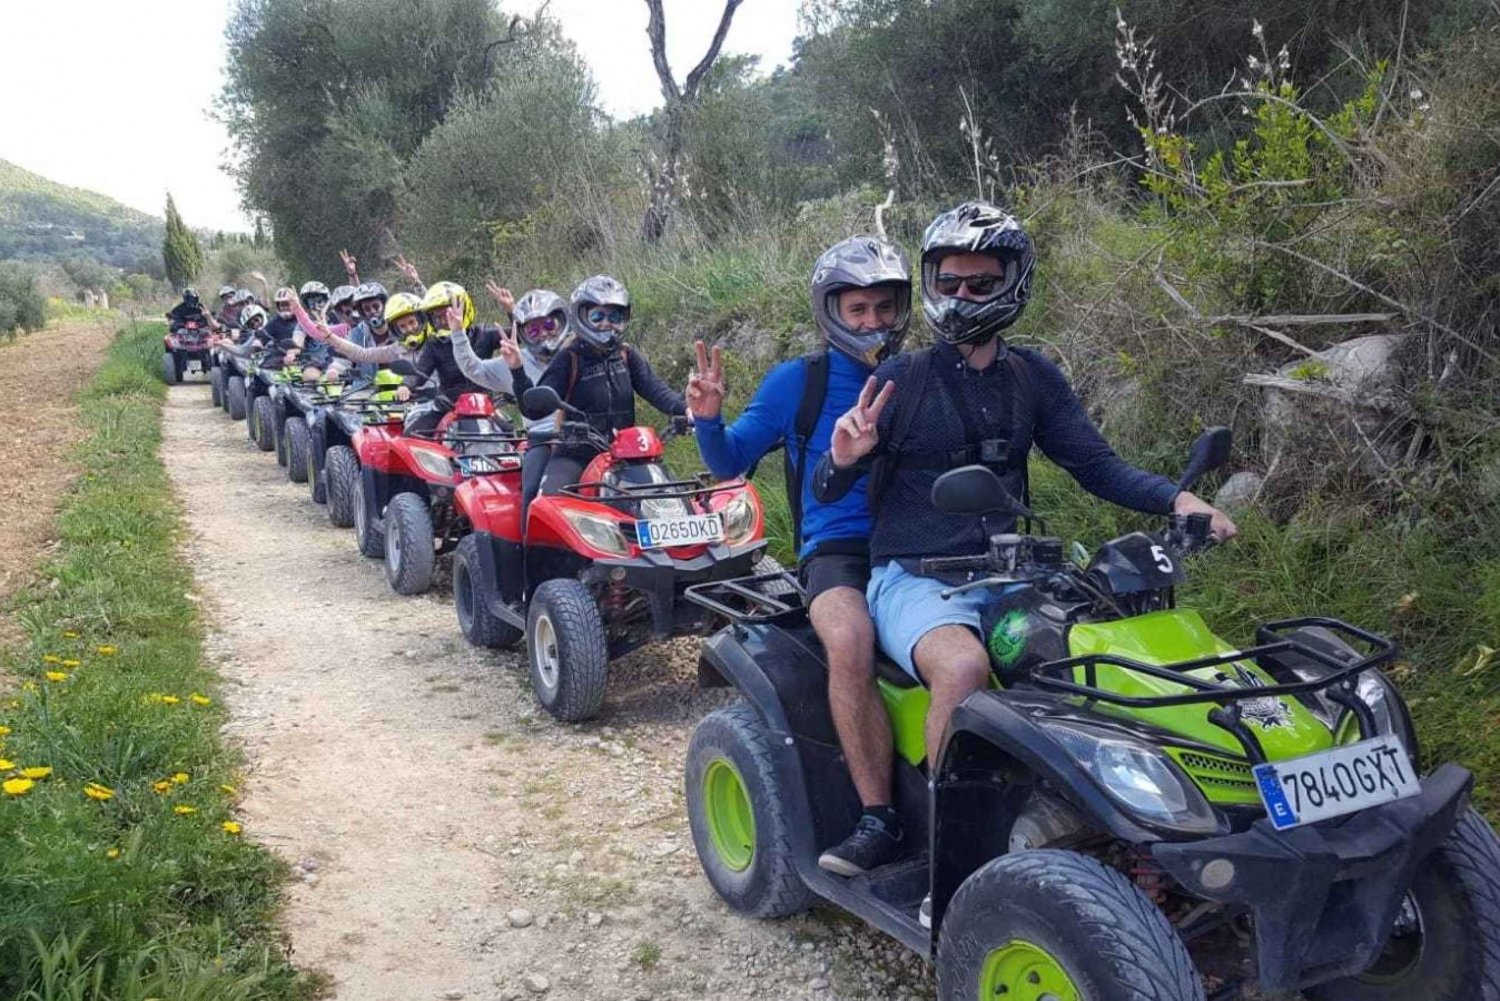 Mallorca: Quad Bike Adventure Safari and Swim in a Cala